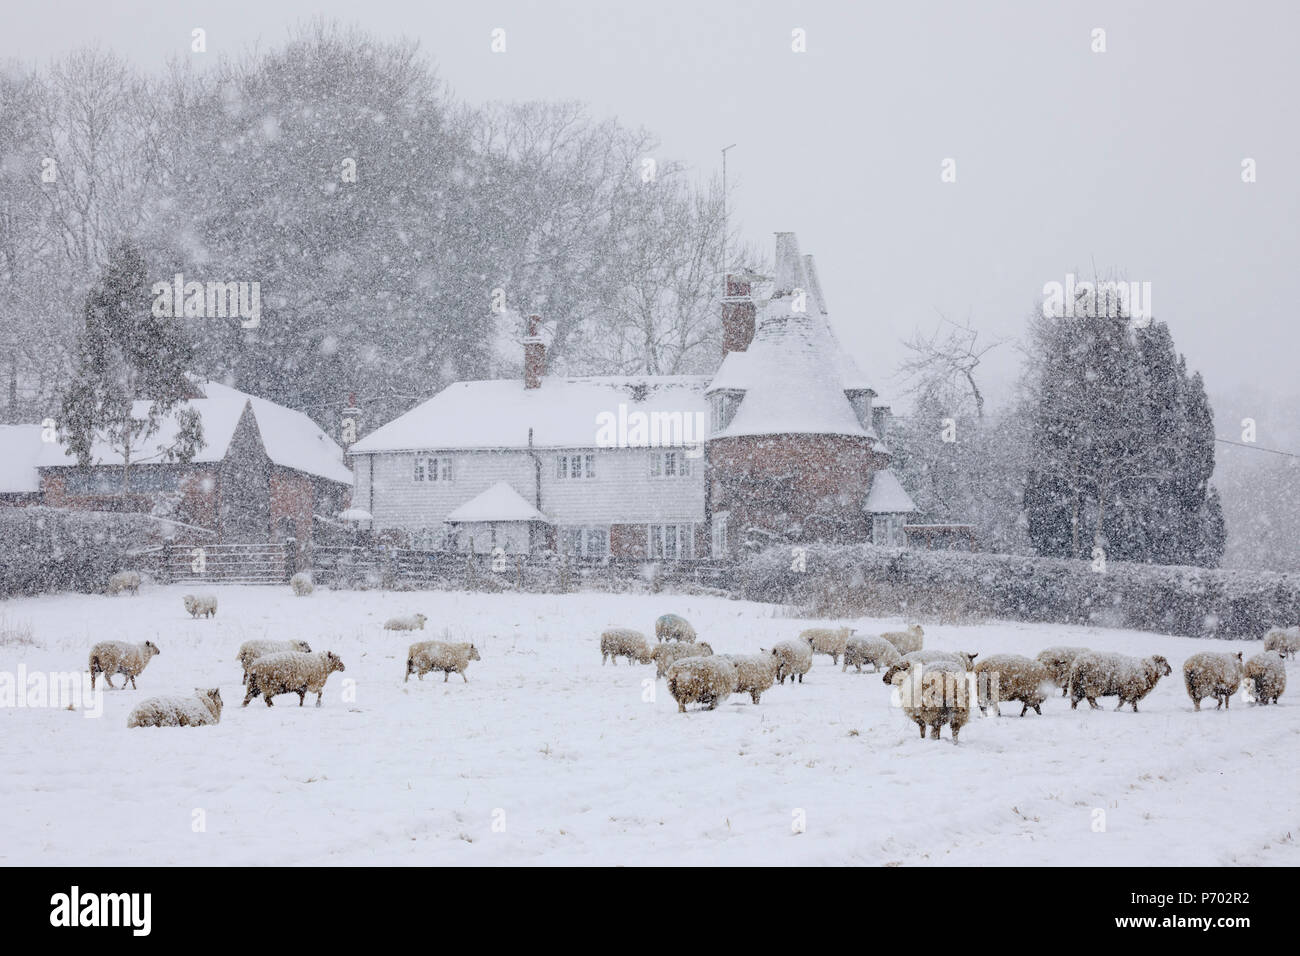 Antigua casa oast y ovejas en el campo cubierto de nieve en la tormenta de nieve tomadas de sendero, Burwash, East Sussex, Inglaterra, Reino Unido, Europa Foto de stock